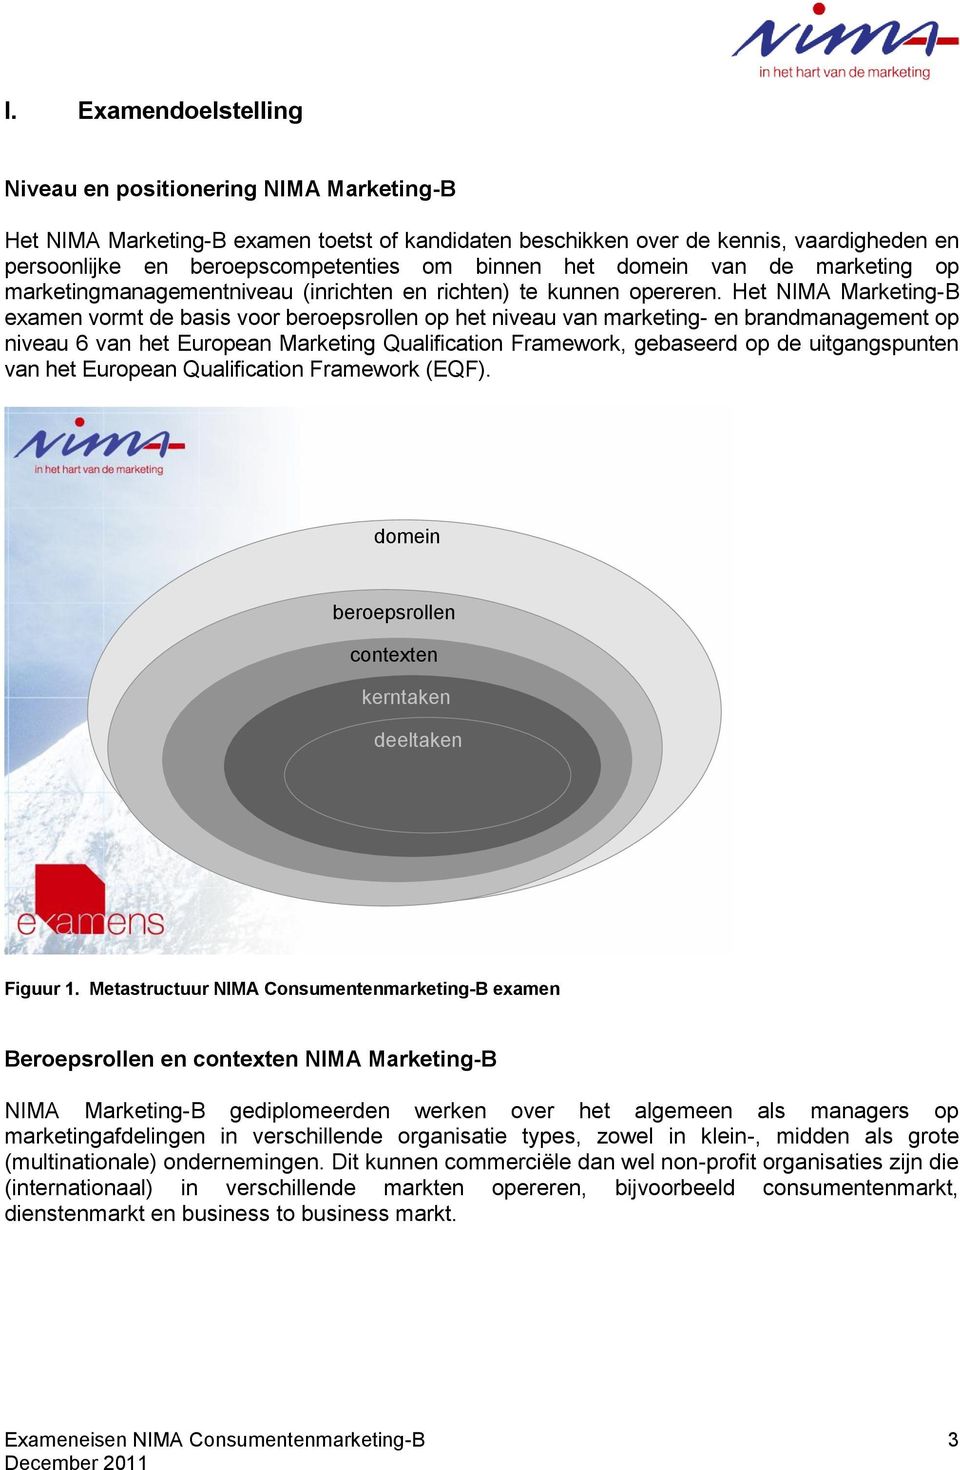 Het NIMA Marketing-B examen vormt de basis voor beroepsrollen op het niveau van marketing- en brandmanagement op niveau 6 van het European Marketing Qualification Framework, gebaseerd op de